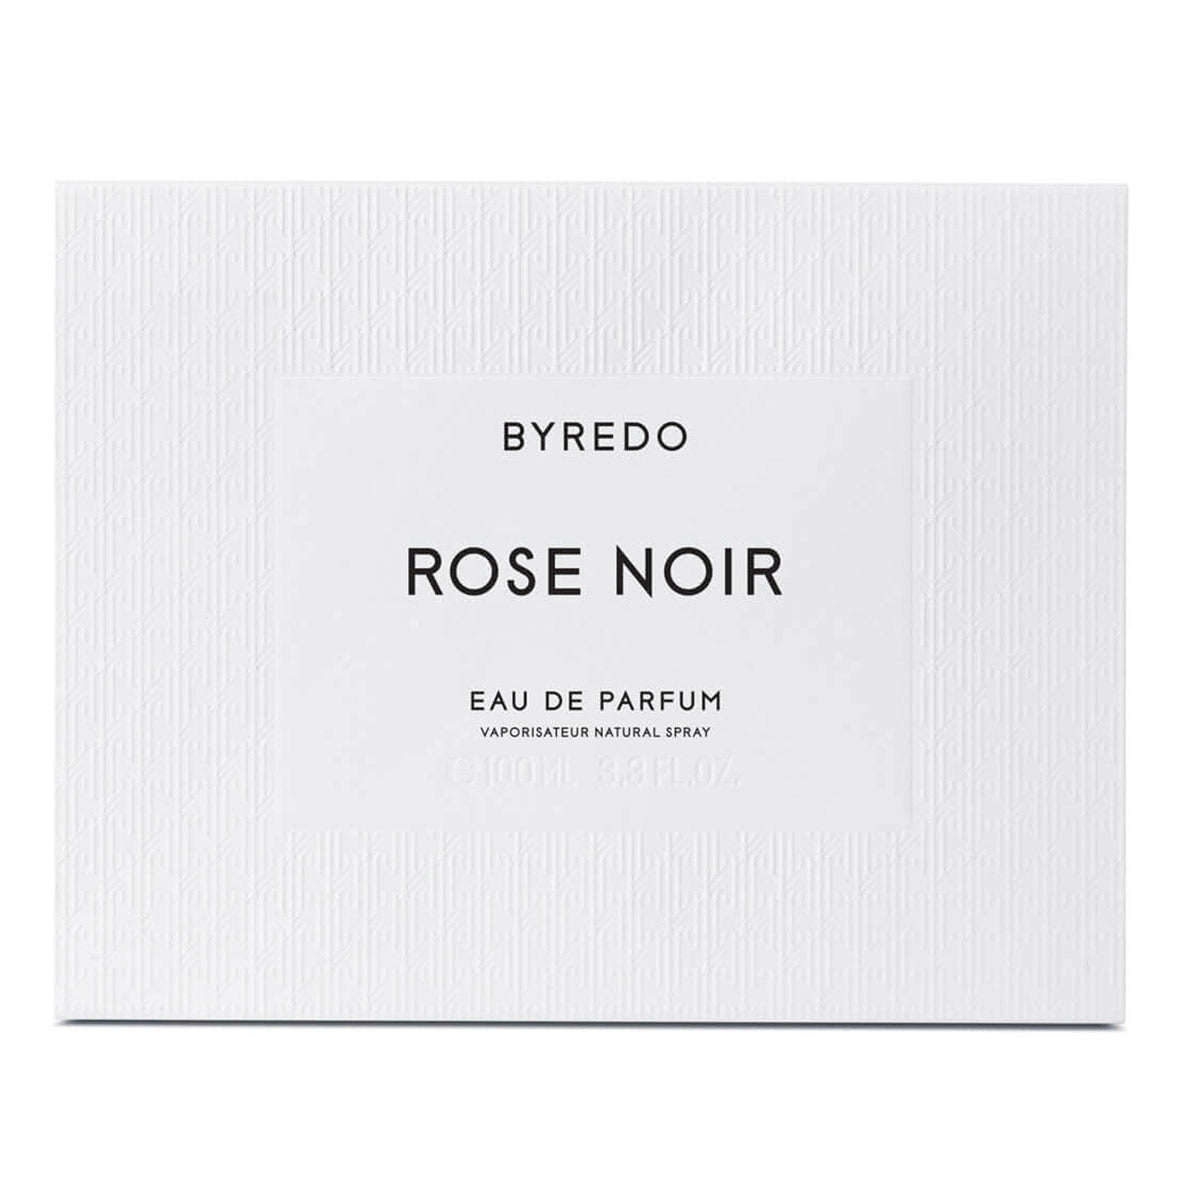 Alternate image of Rose Noir Eau de Parfum